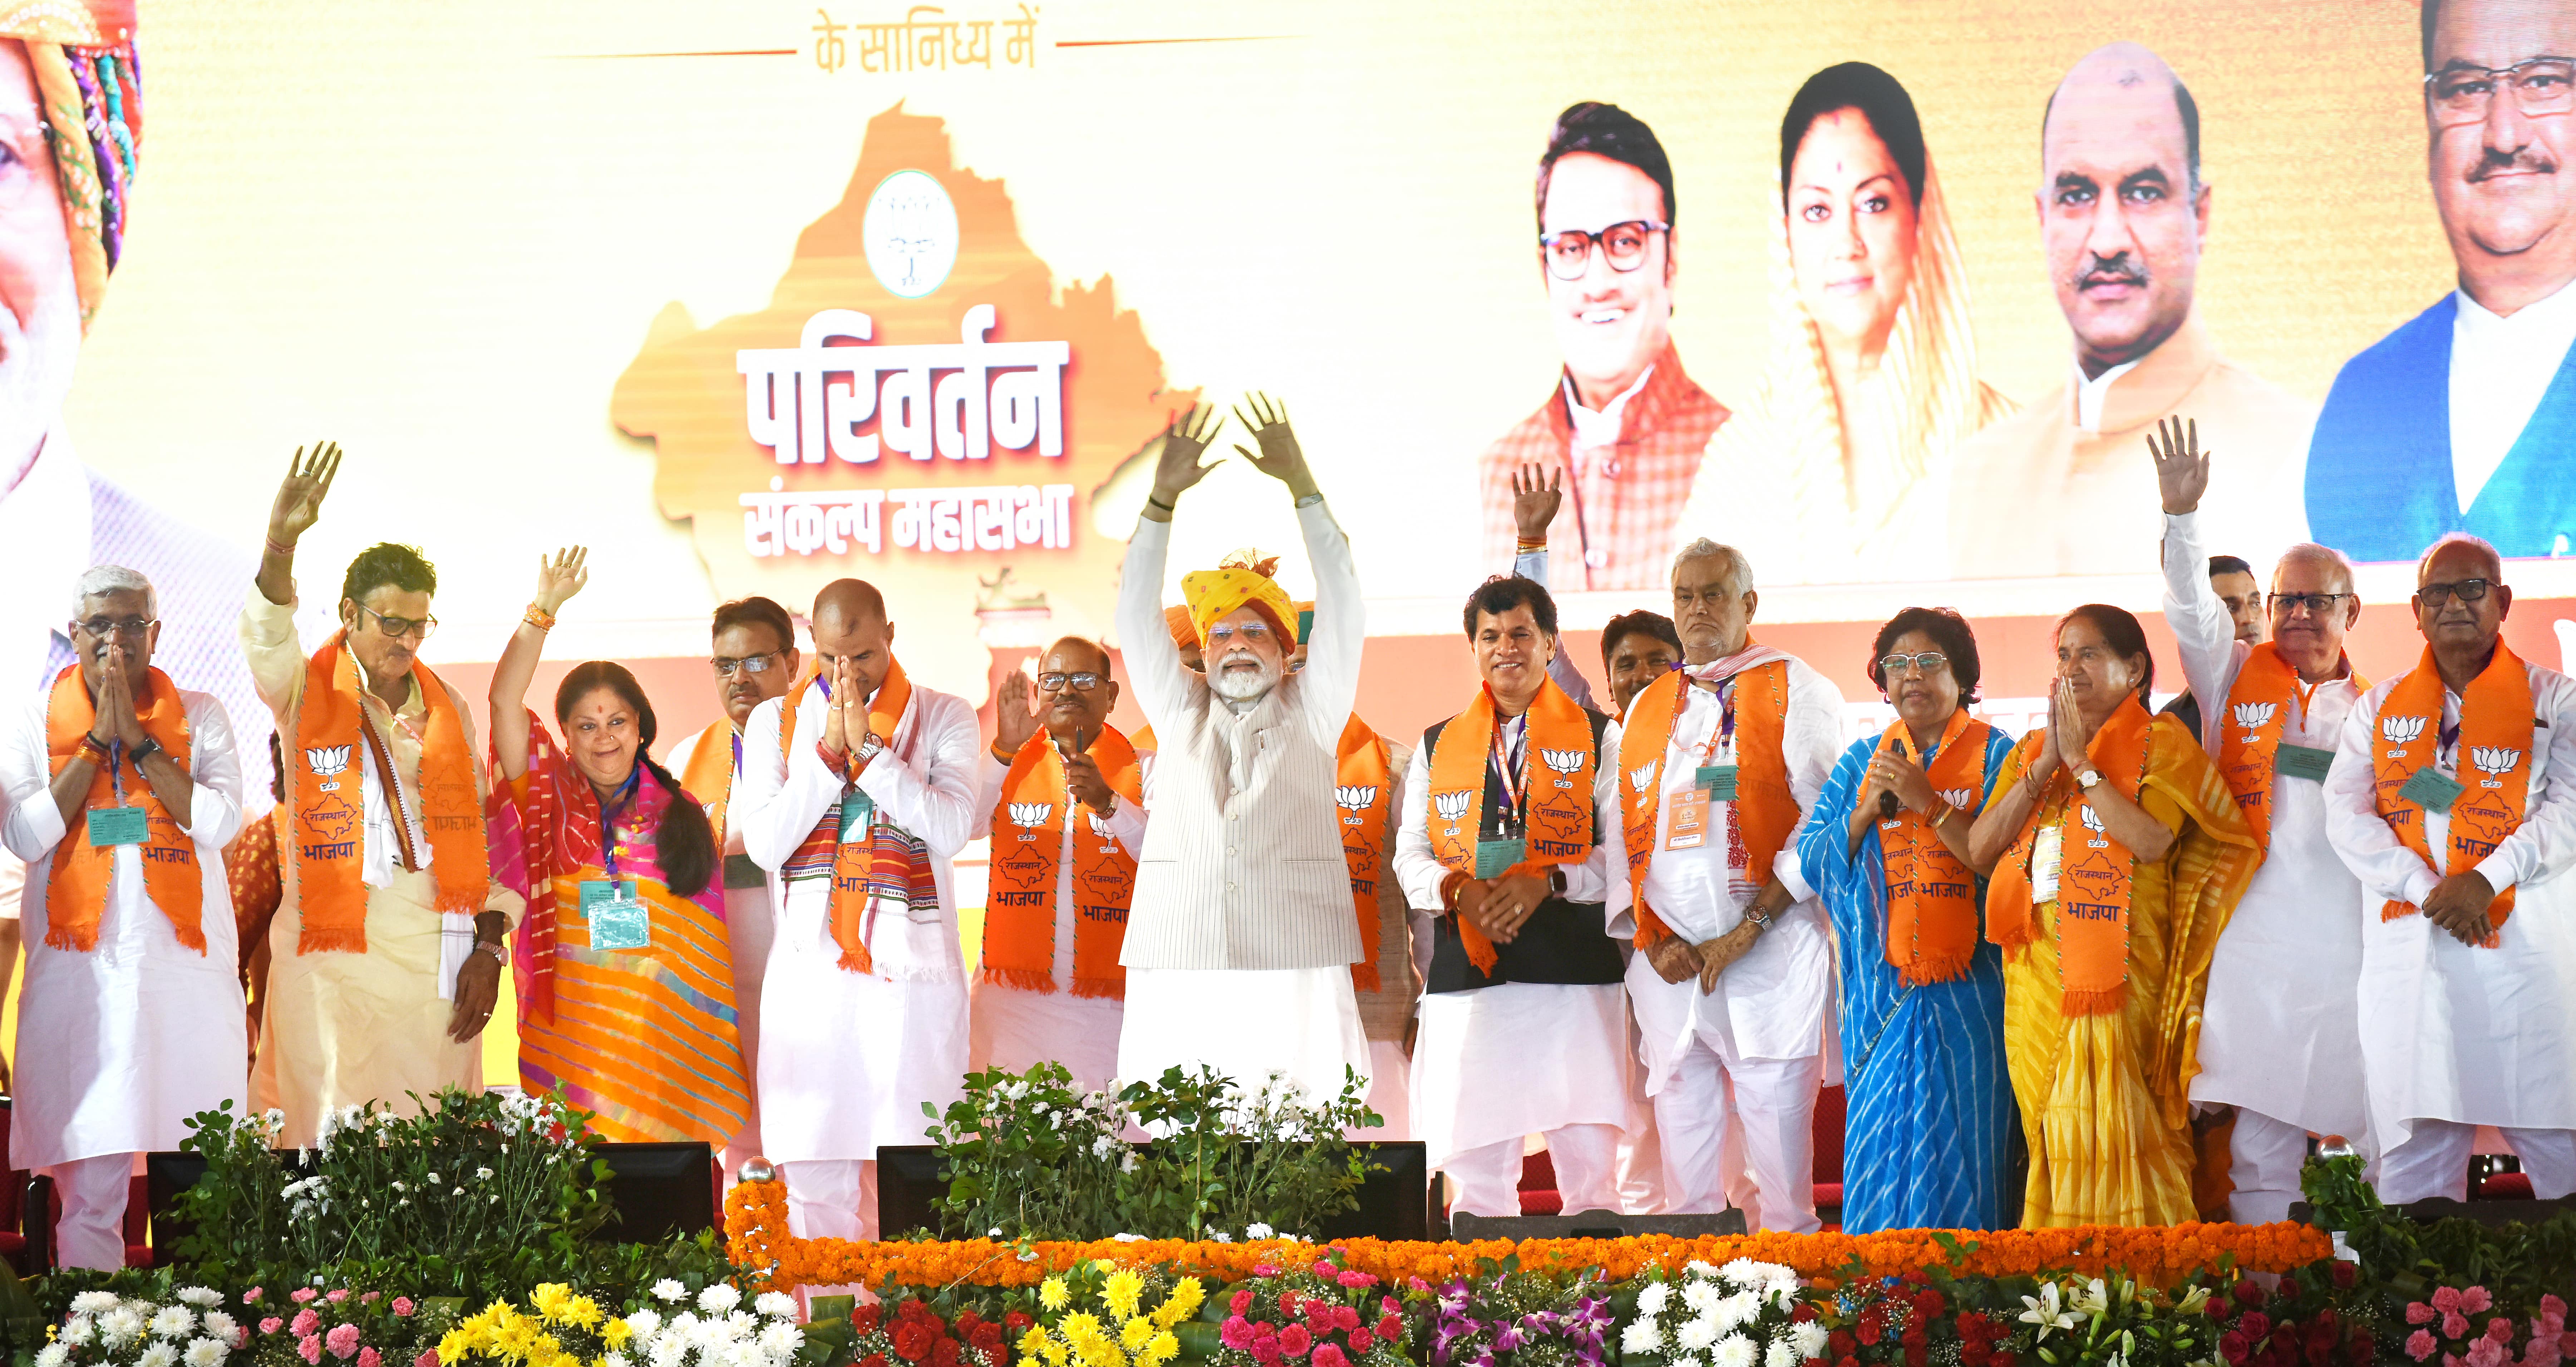 PM Modi and other senior party leaders greeting and waving at the crowd at Dadiya, Jaipur